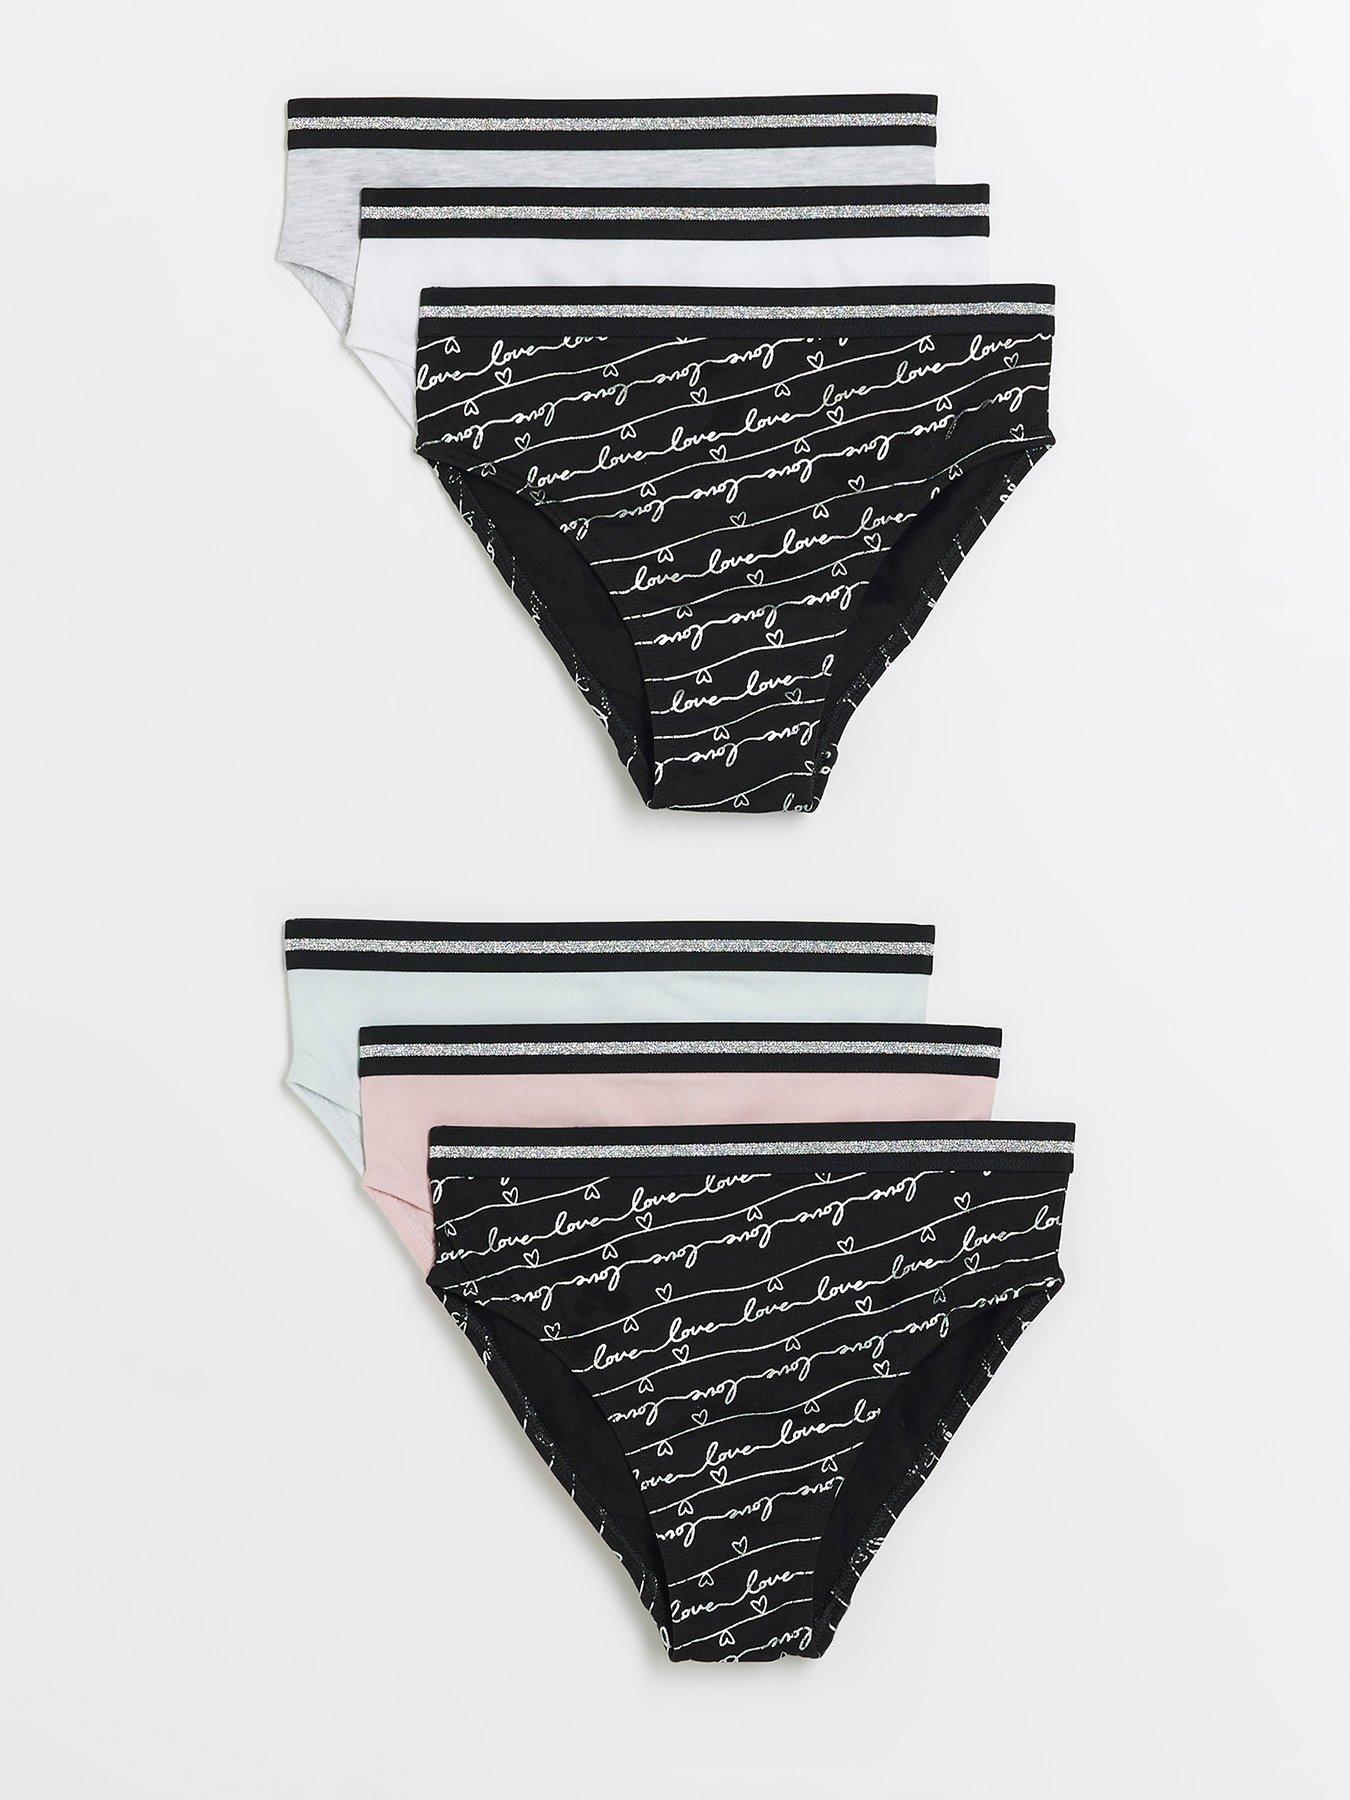 Girls New underwear size 7-8 M - baby & kid stuff - by owner